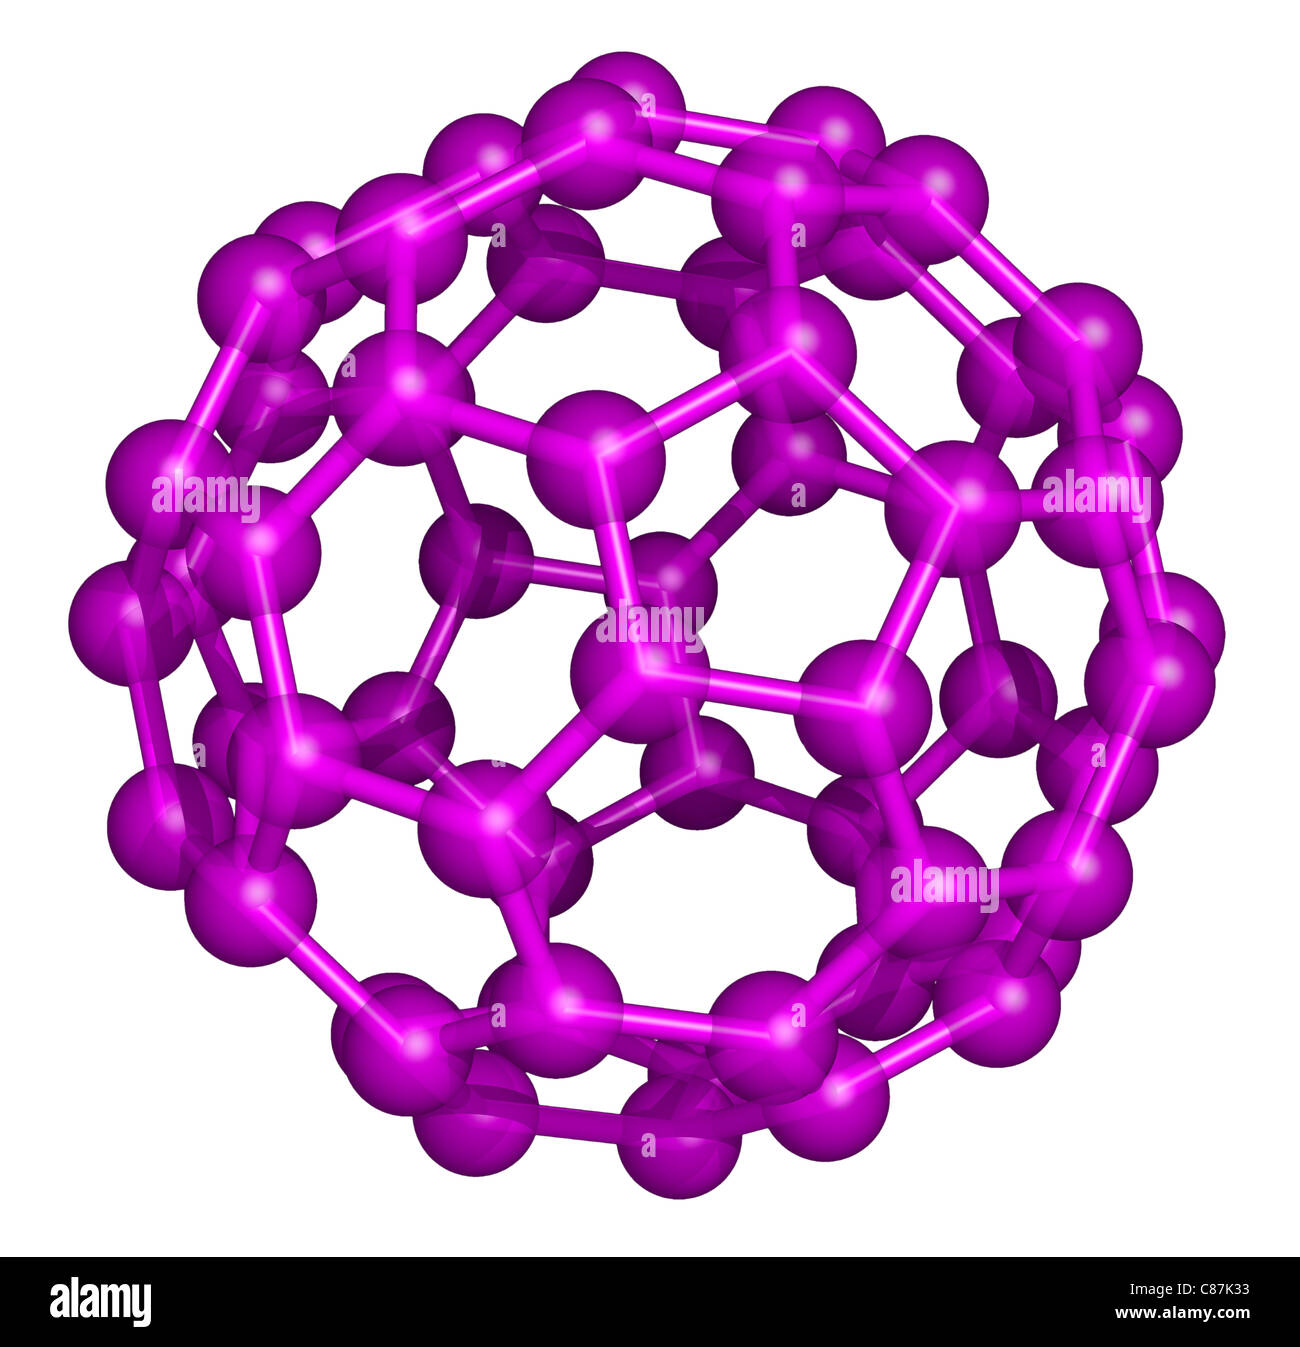 C60 ist ein Molekül, das besteht aus 60 Kohlenstoffatomen, als 12 Fünfecken und 20 Sechsecken angeordnet. Stockfoto